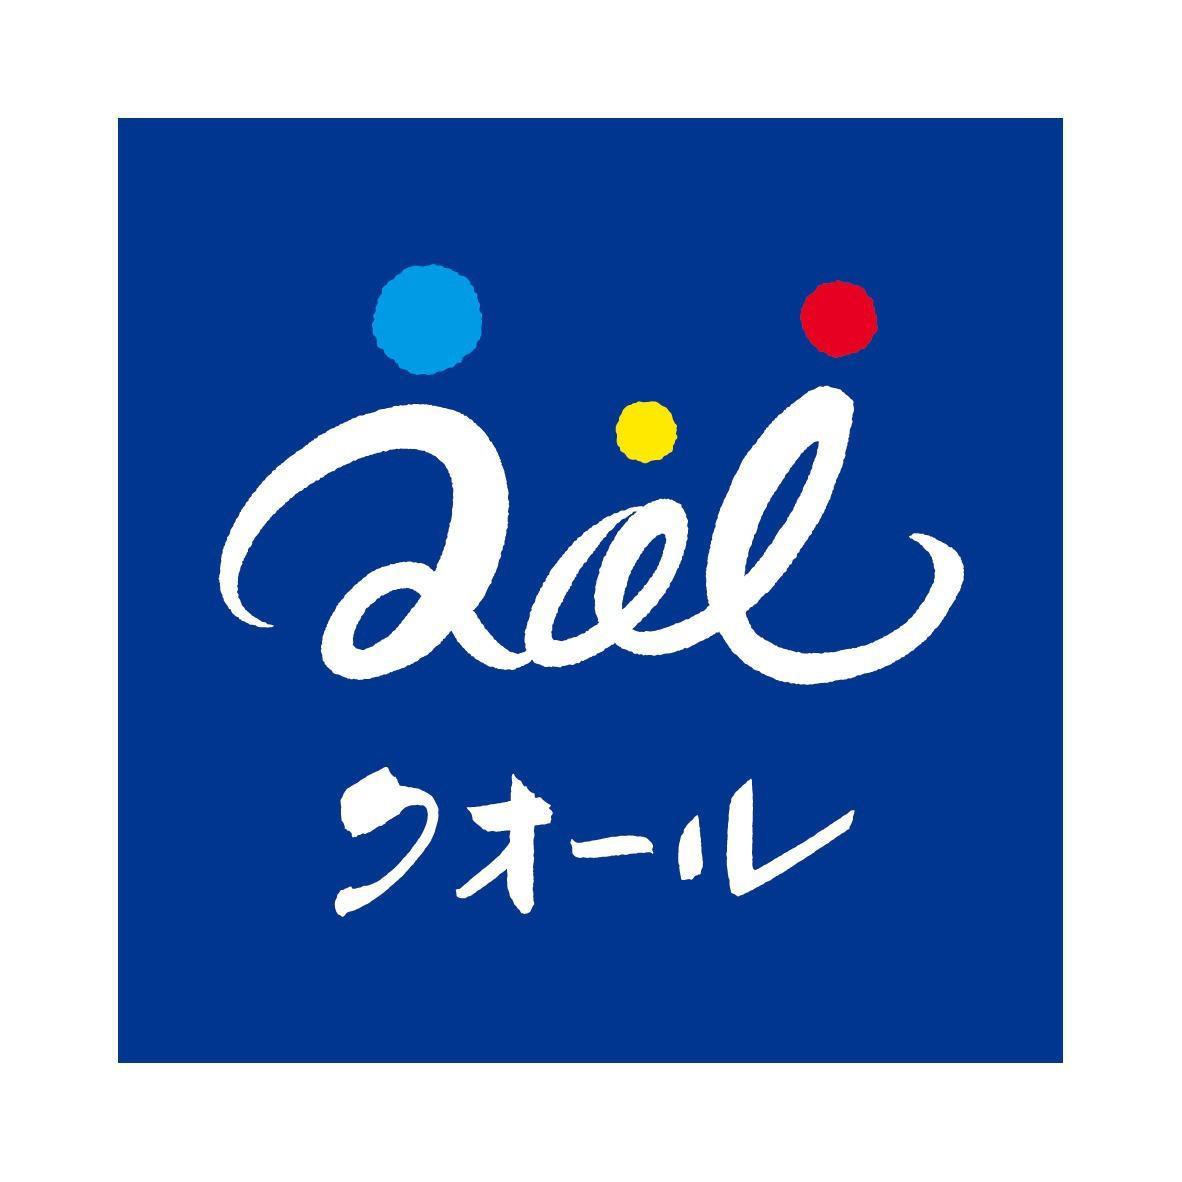 クオール薬局KOILテラス店 Logo